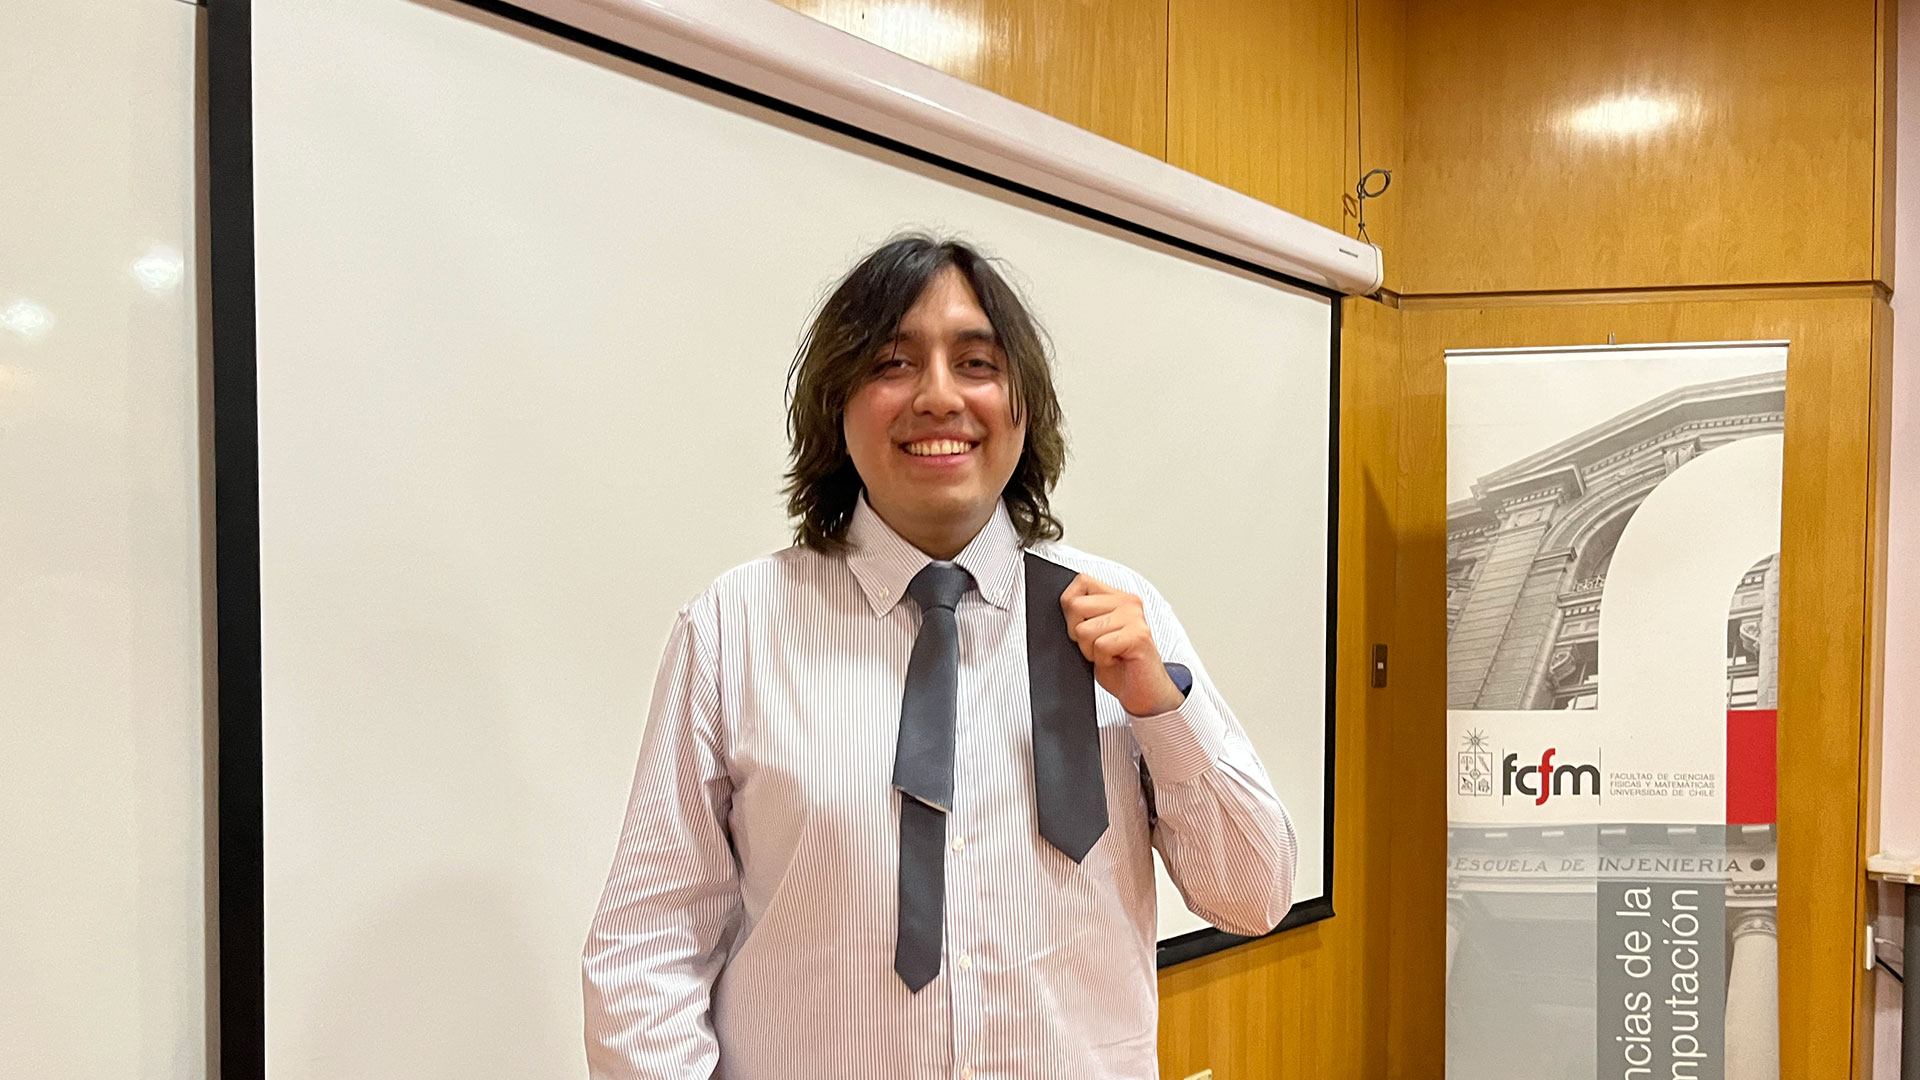 ¡Felicitaciones Sebastián Valdivia, nuevo ingeniero civil en computación!